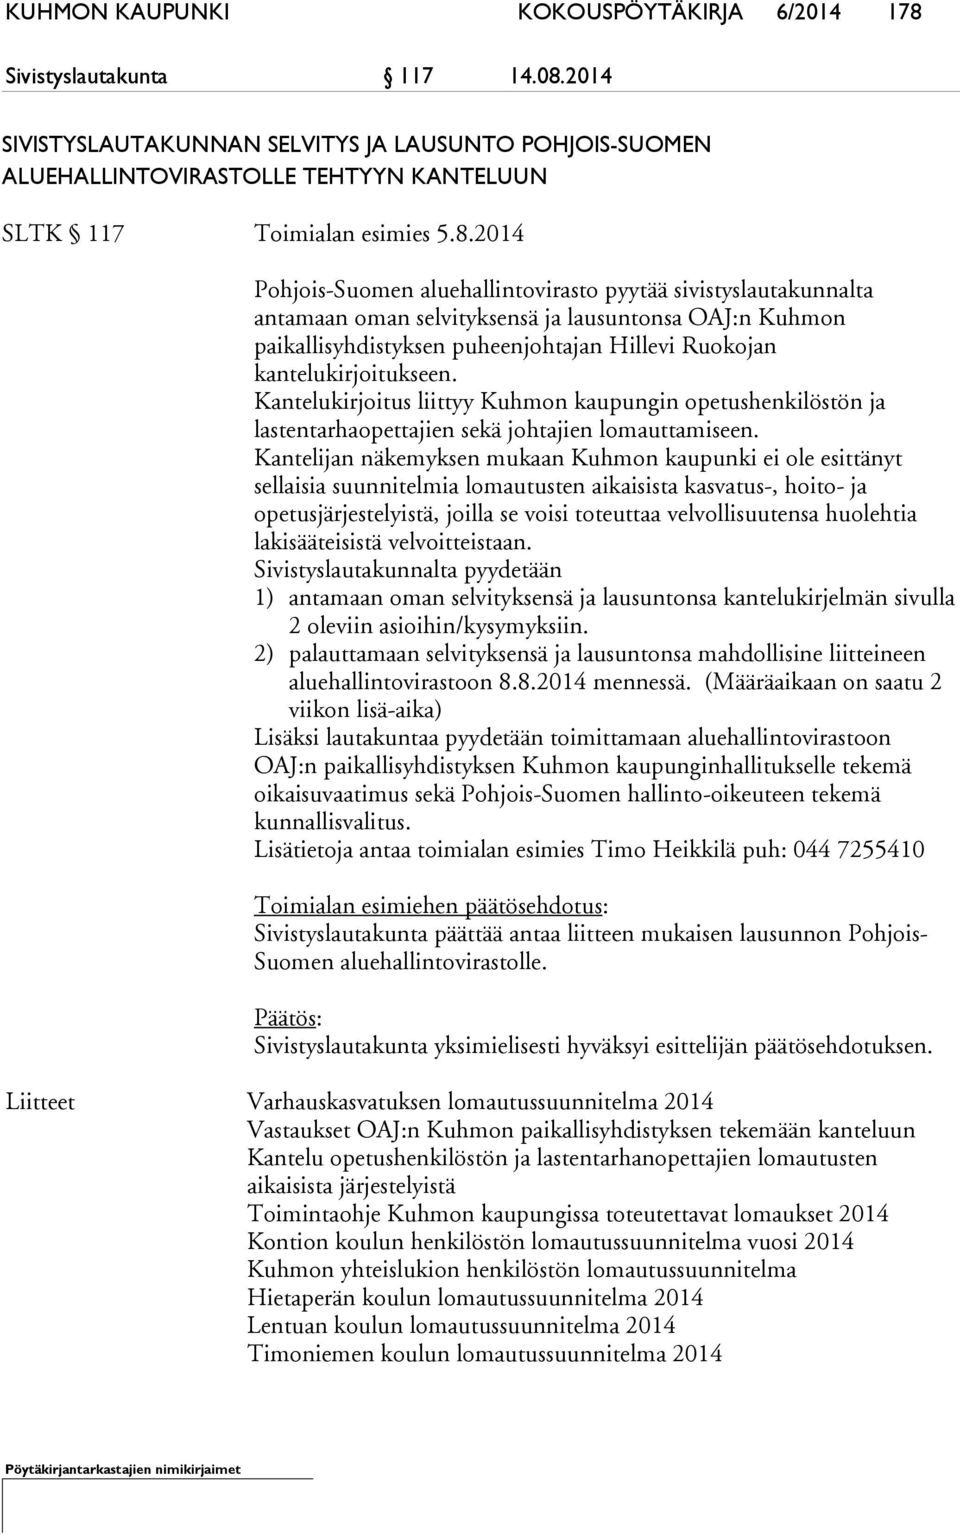 2014 Pohjois-Suomen aluehallintovirasto pyytää sivistyslautakunnalta antamaan oman selvityksensä ja lausuntonsa OAJ:n Kuhmon paikallisyhdistyksen puheenjohtajan Hillevi Ruokojan kantelukirjoitukseen.